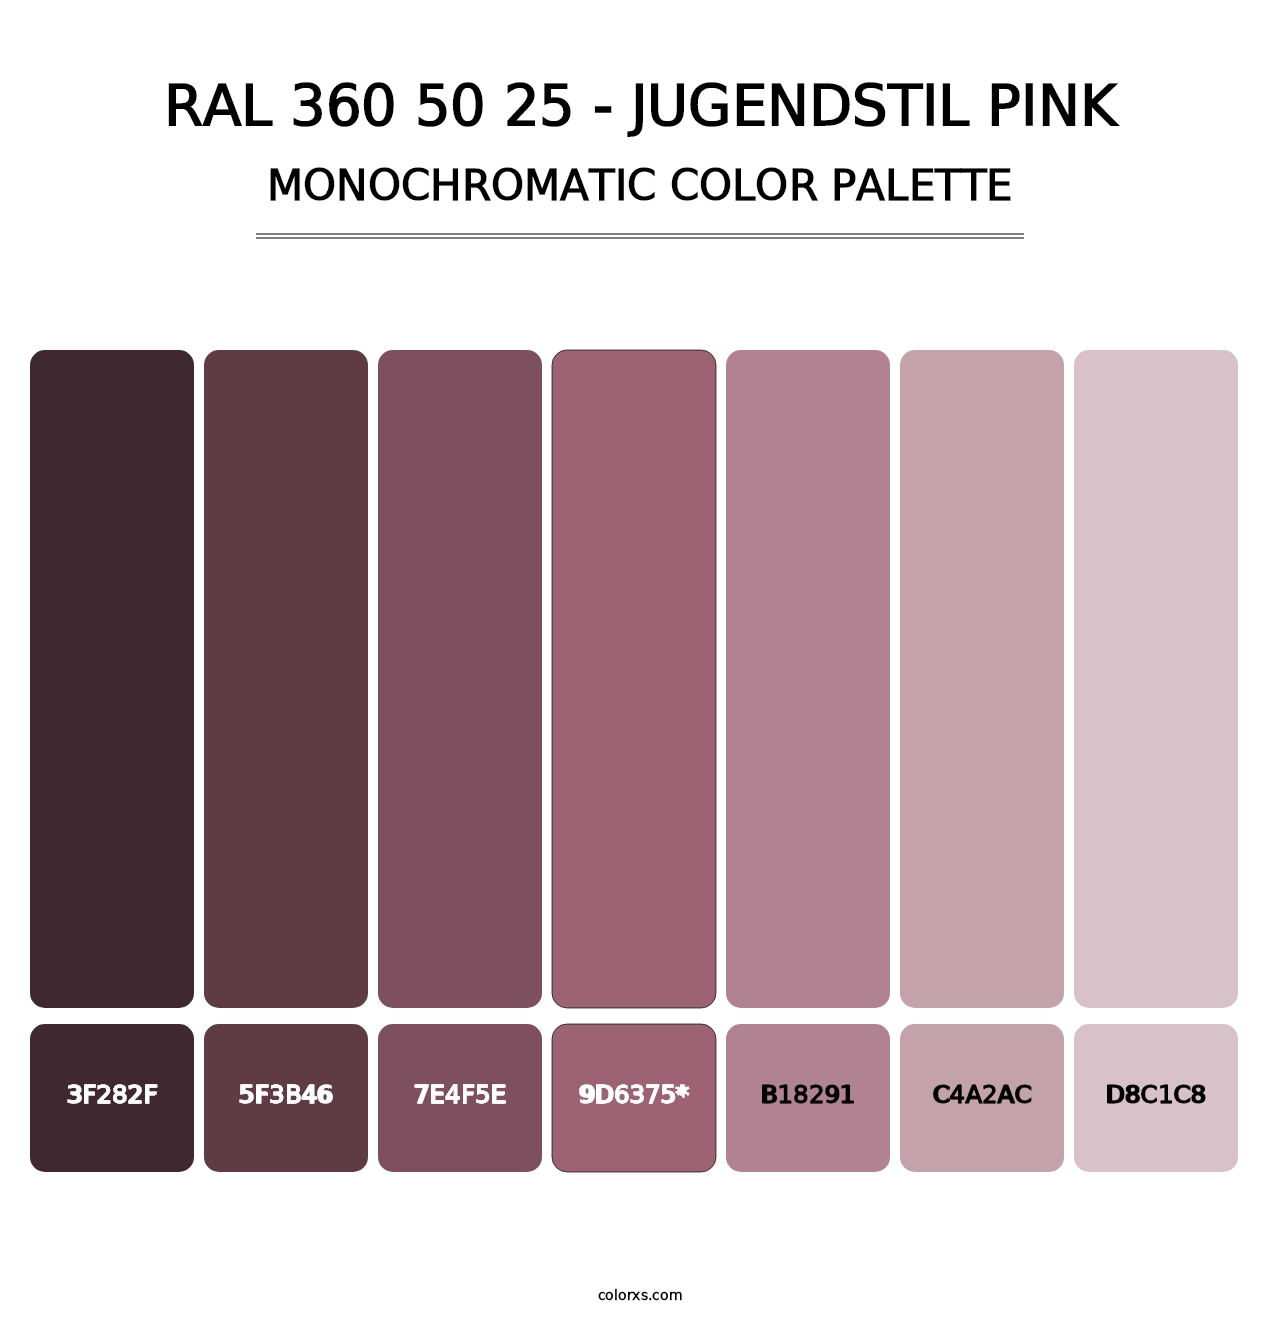 RAL 360 50 25 - Jugendstil Pink - Monochromatic Color Palette